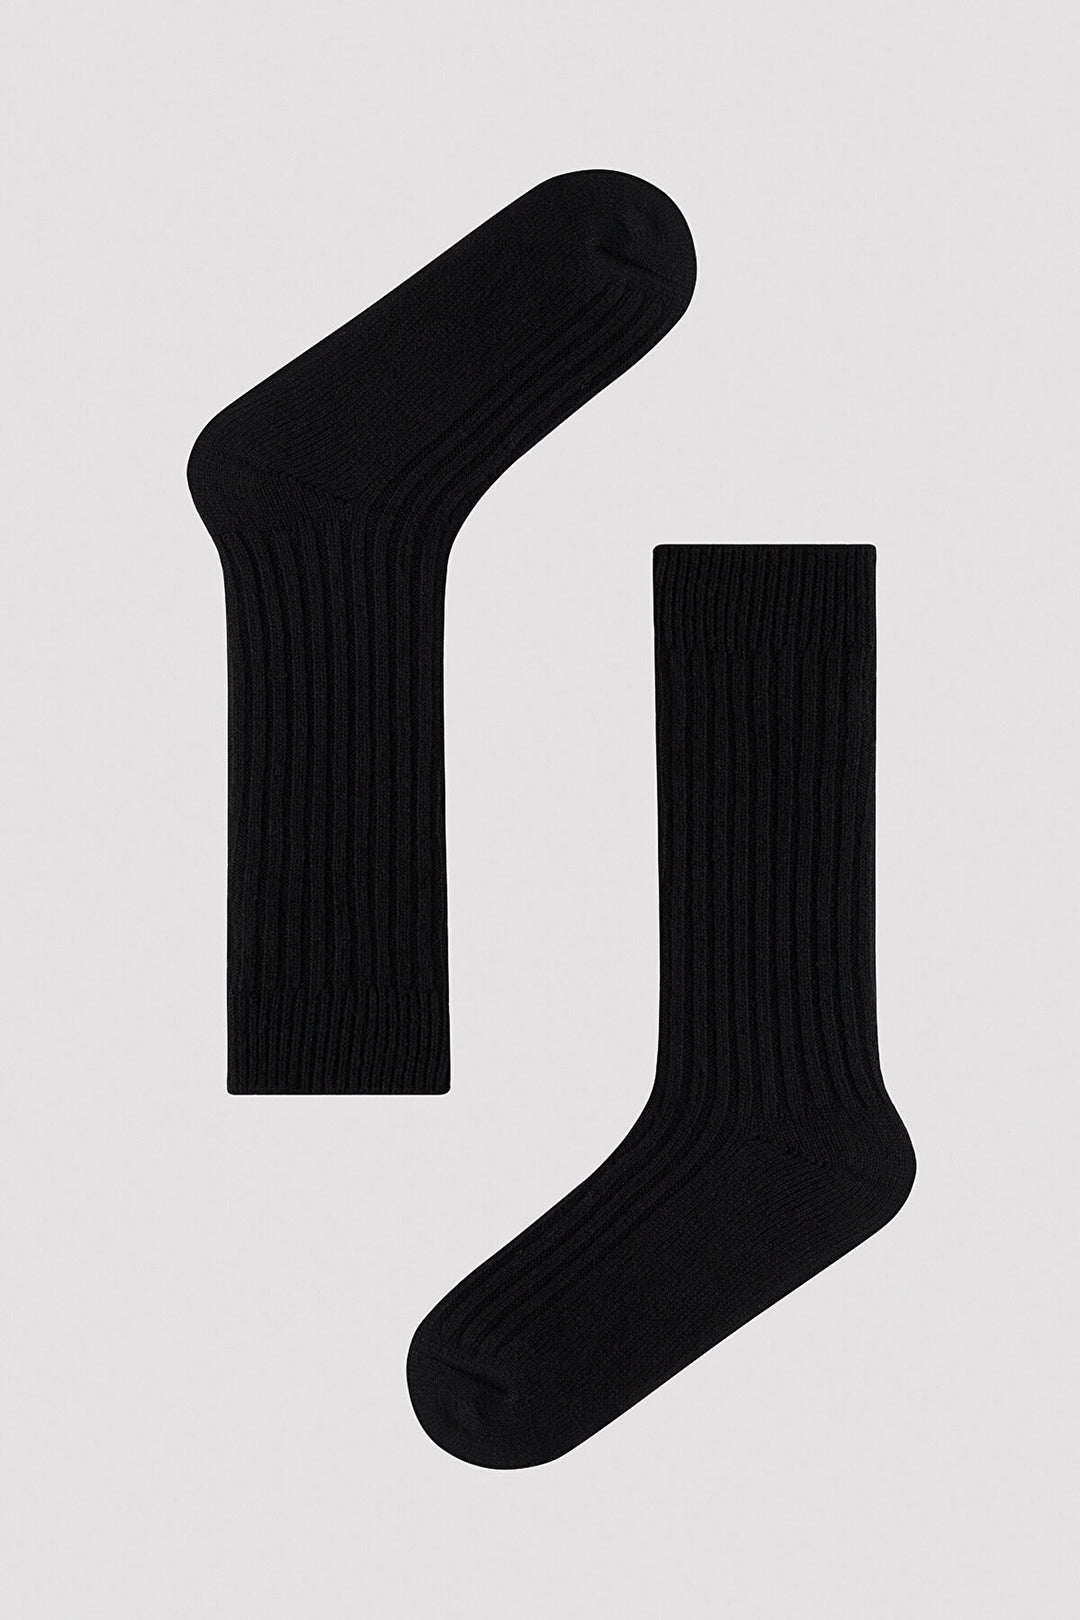 Vertical Ribbed Black Socket